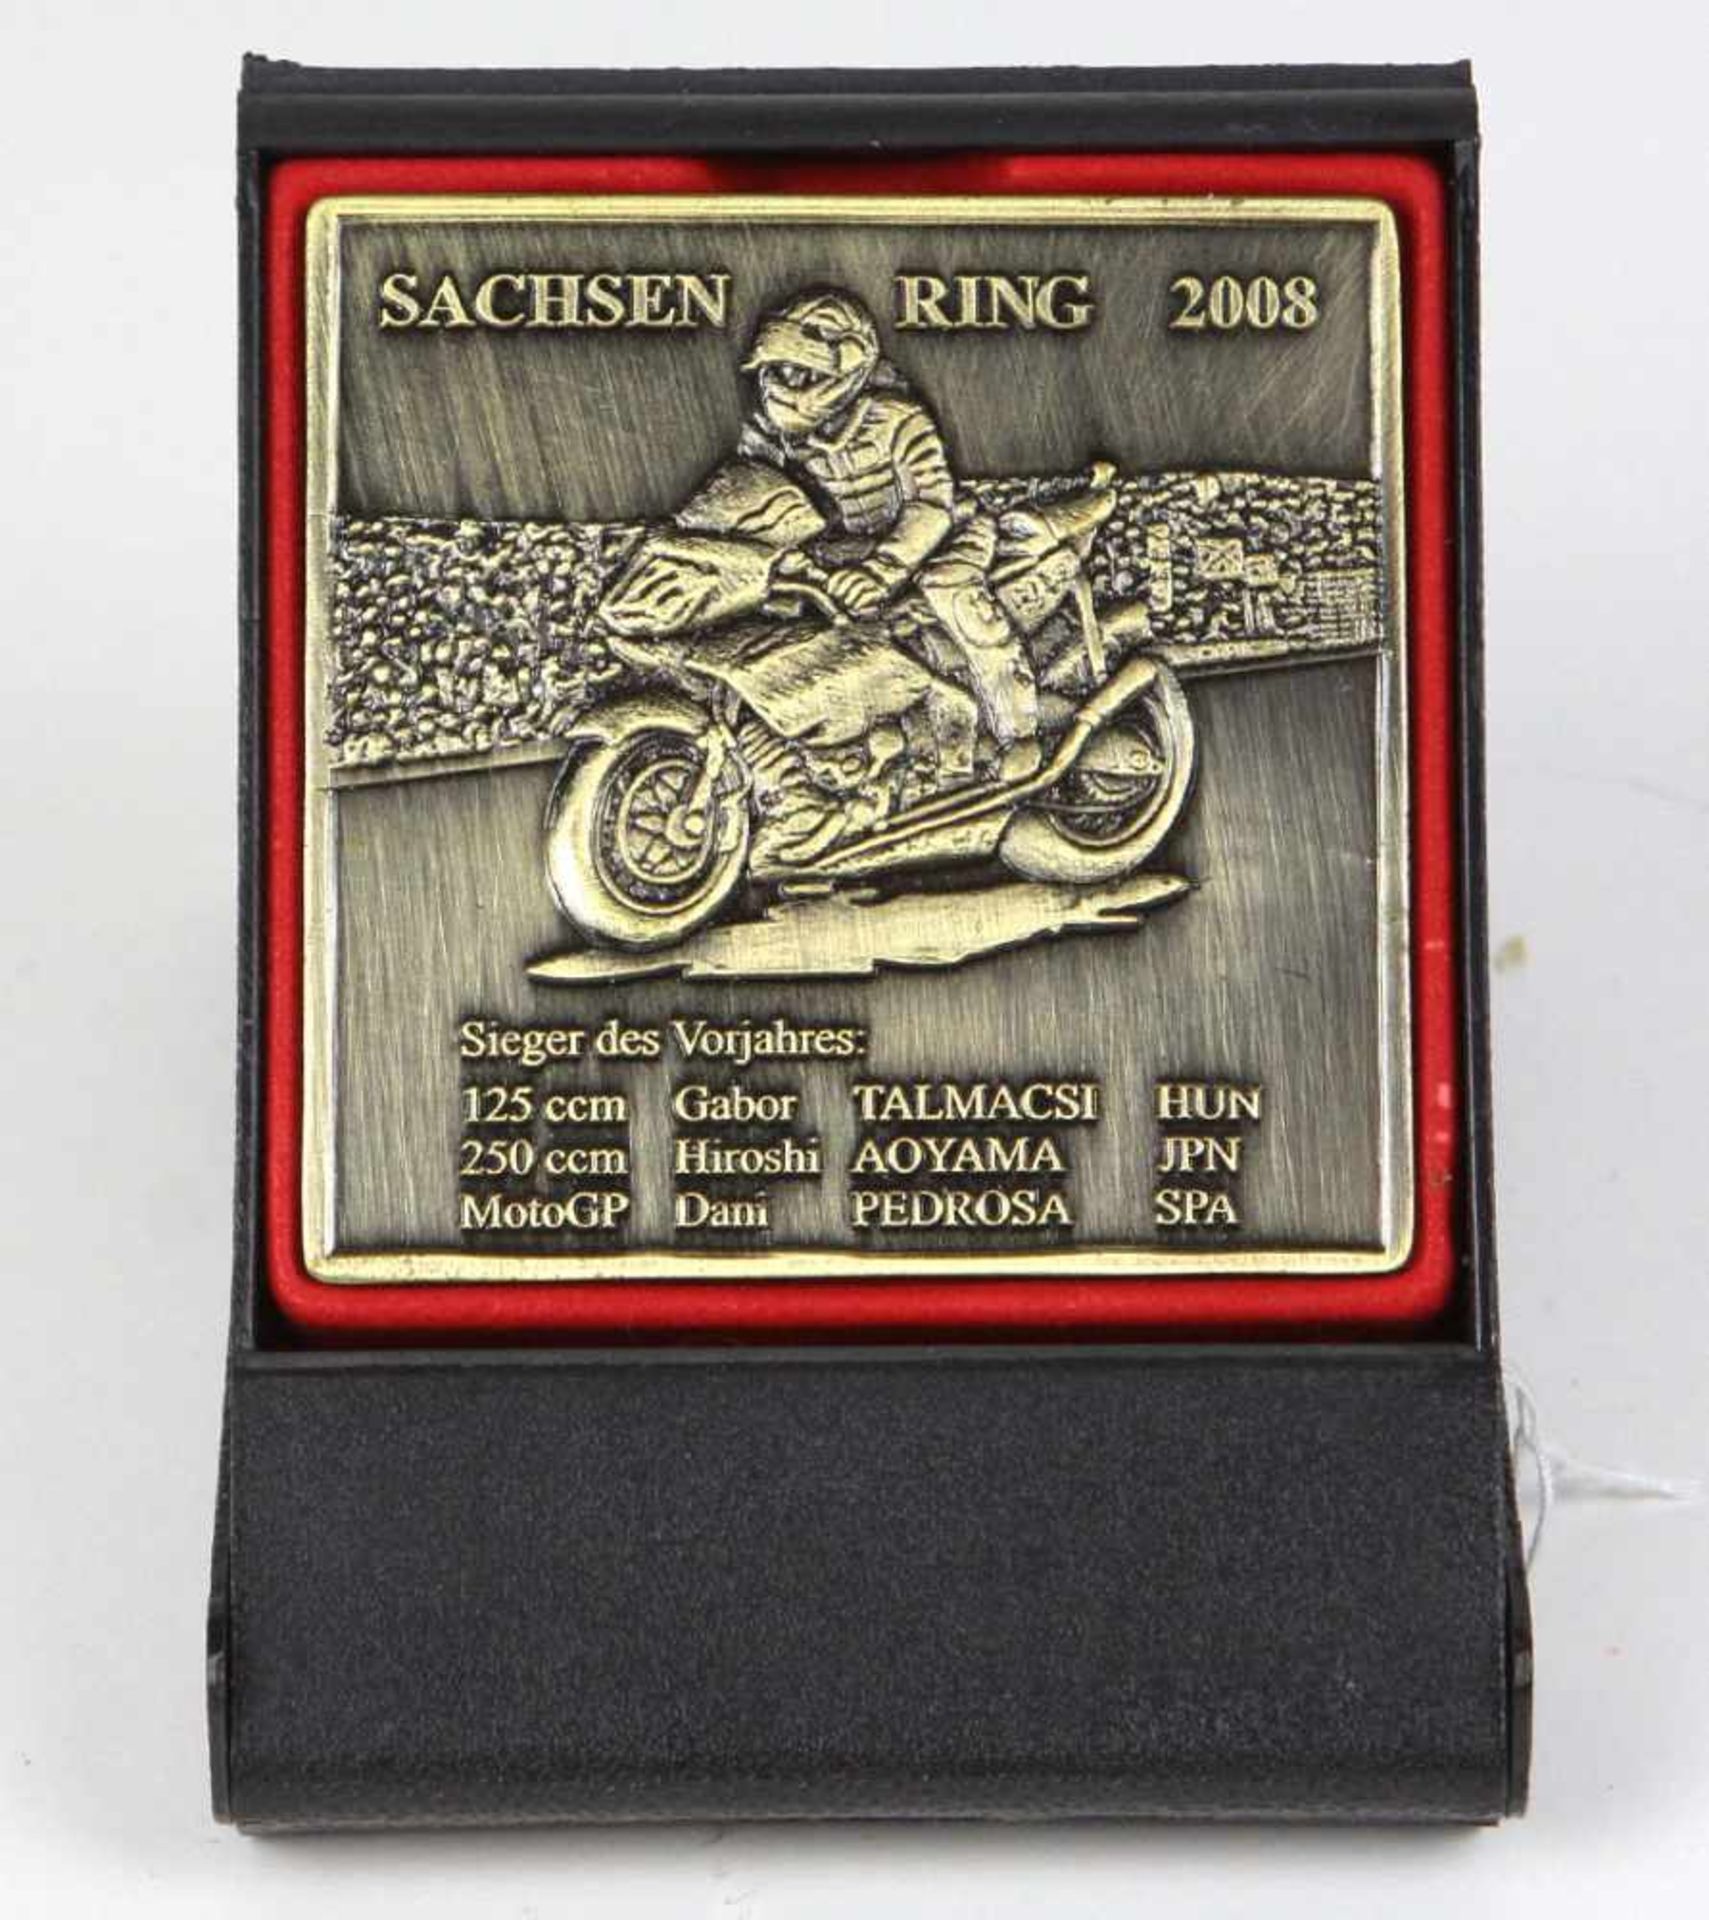 Sachsenring Plakette 2008quadratische Form mit reliefierter Motorsport Darstellung, Aufschrift *